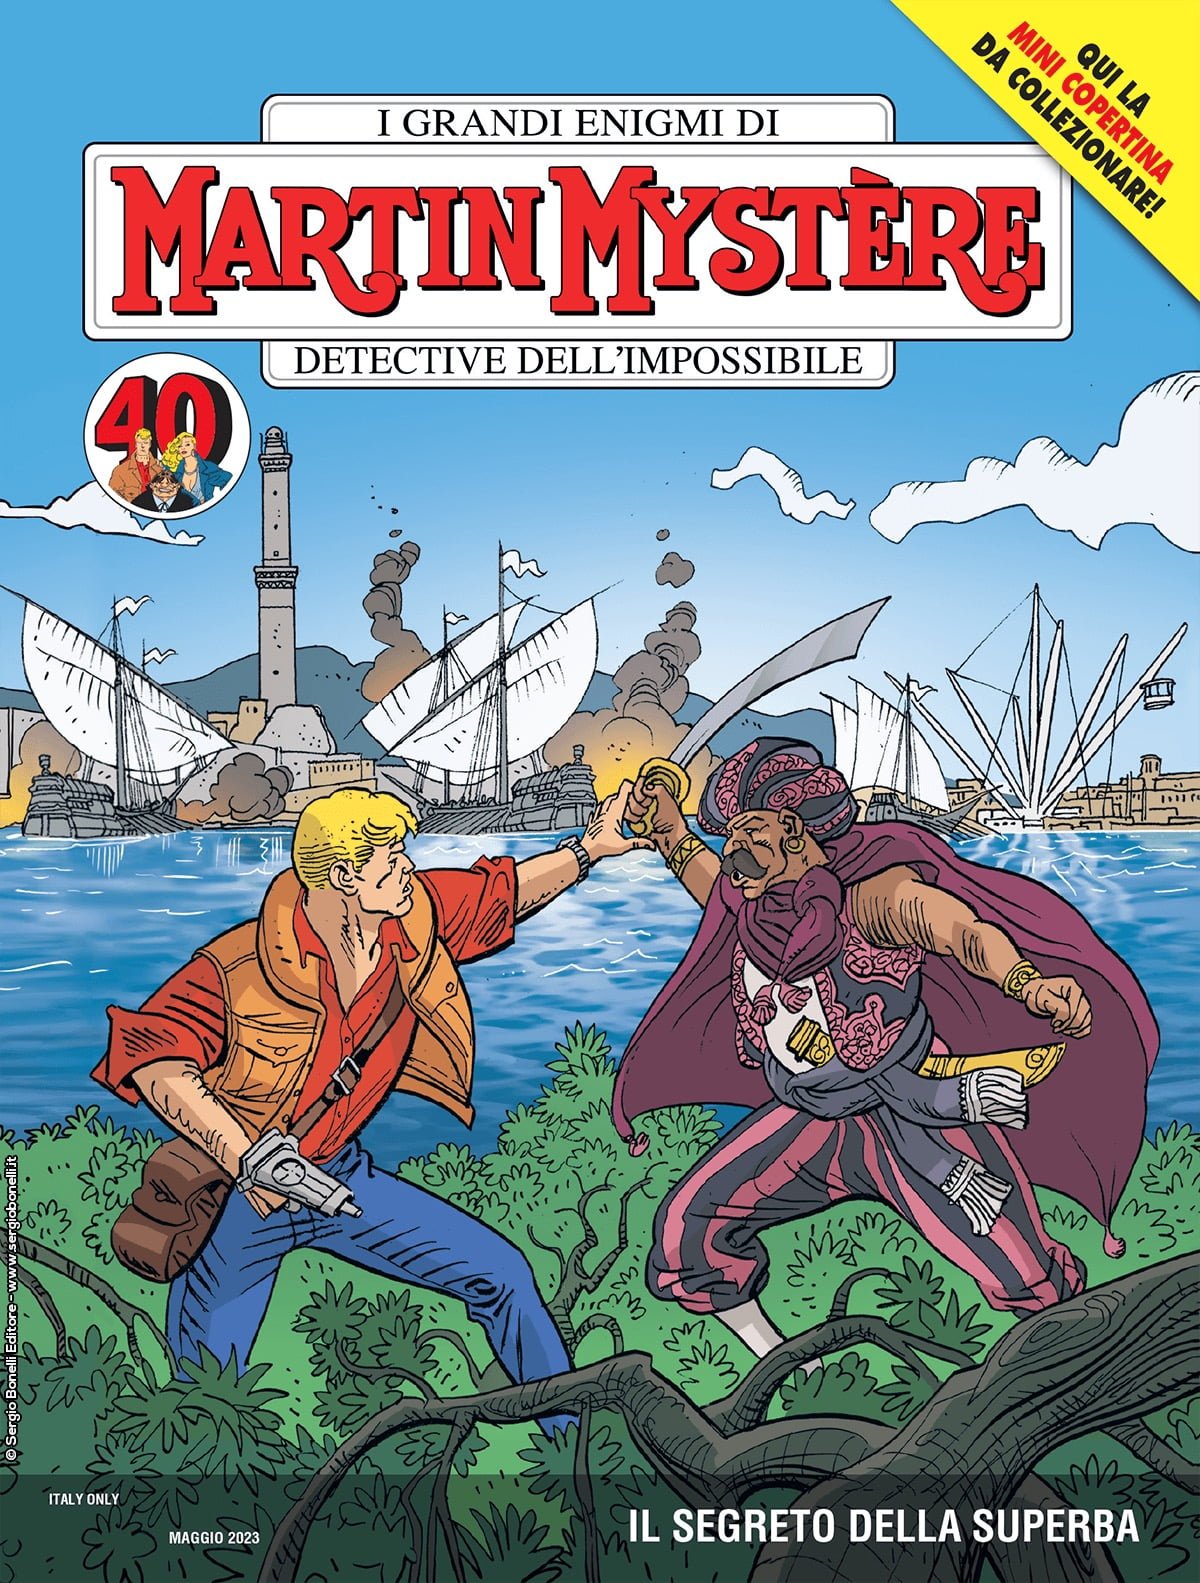 MARTIN MYSTERE 399 VARIANT IL SEGRETO DELLA SUPERBA (COVER B: MARTIN MYSTERE #300)